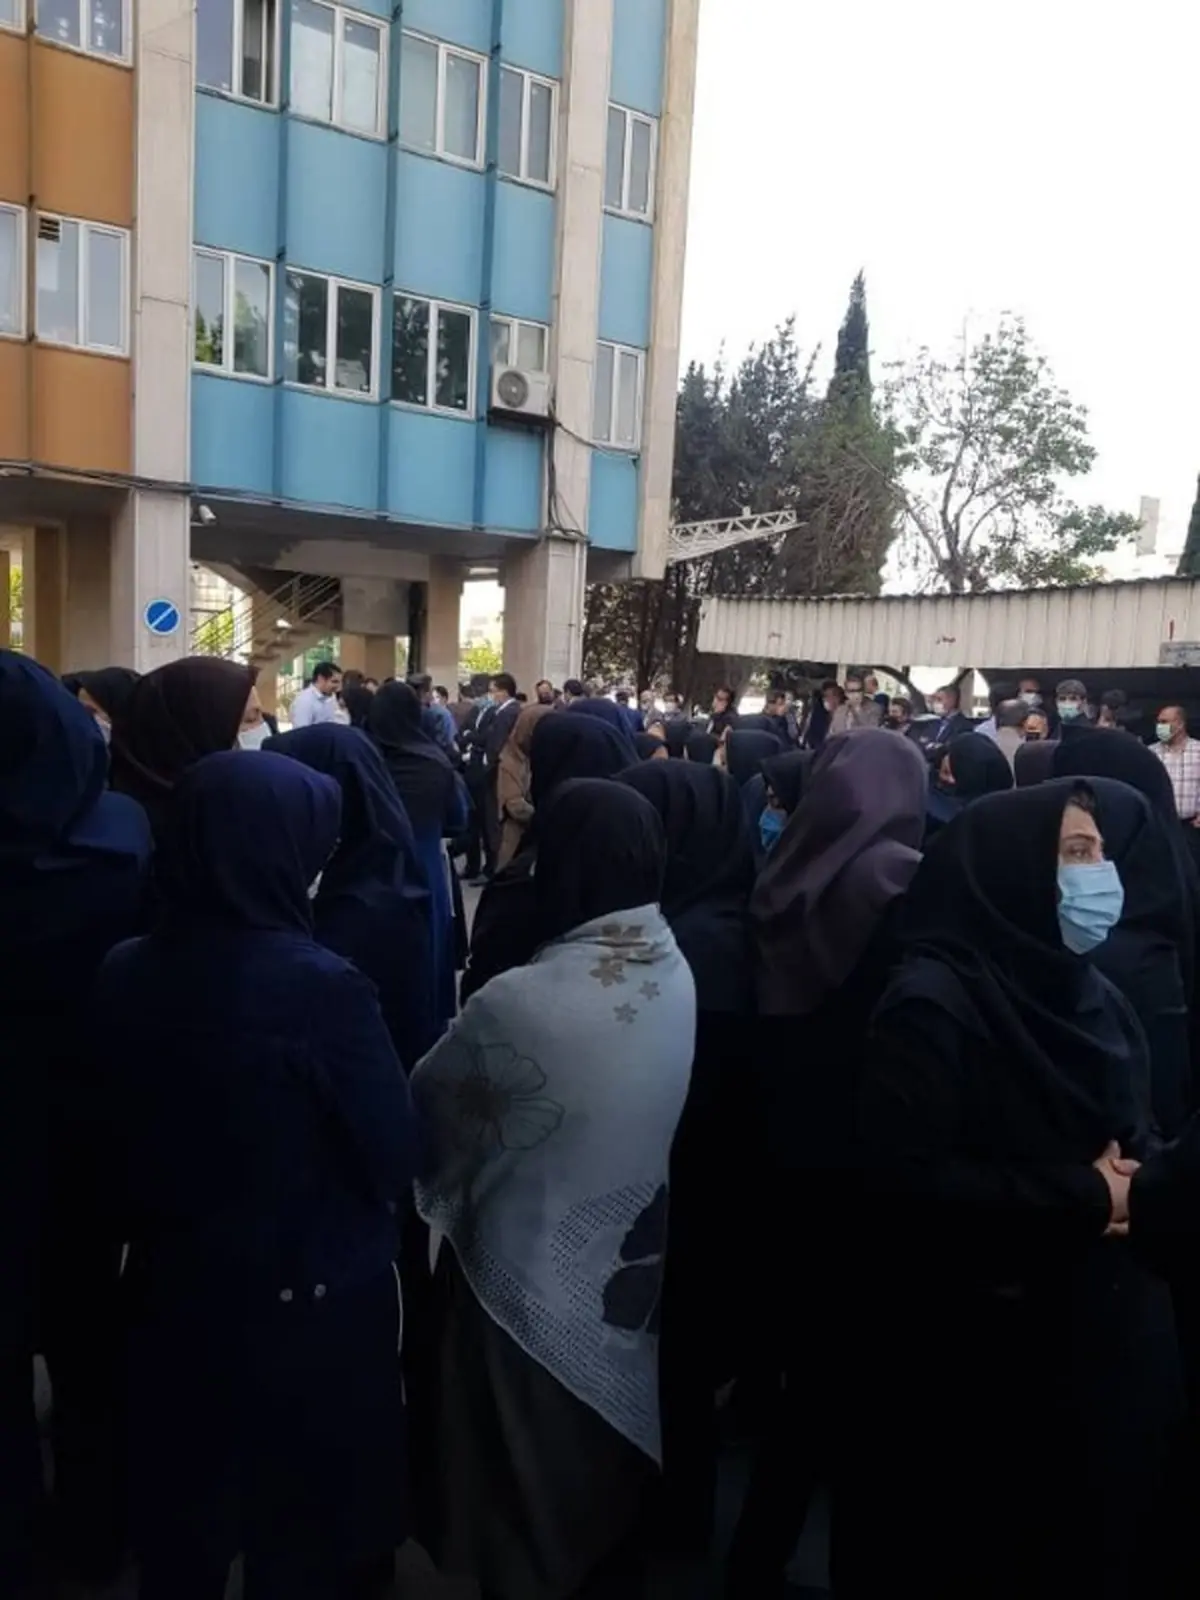 گزارش تسنیم از تجمع اعتراض آمیز عصر امروز در دانشگاه صنعتی شریف